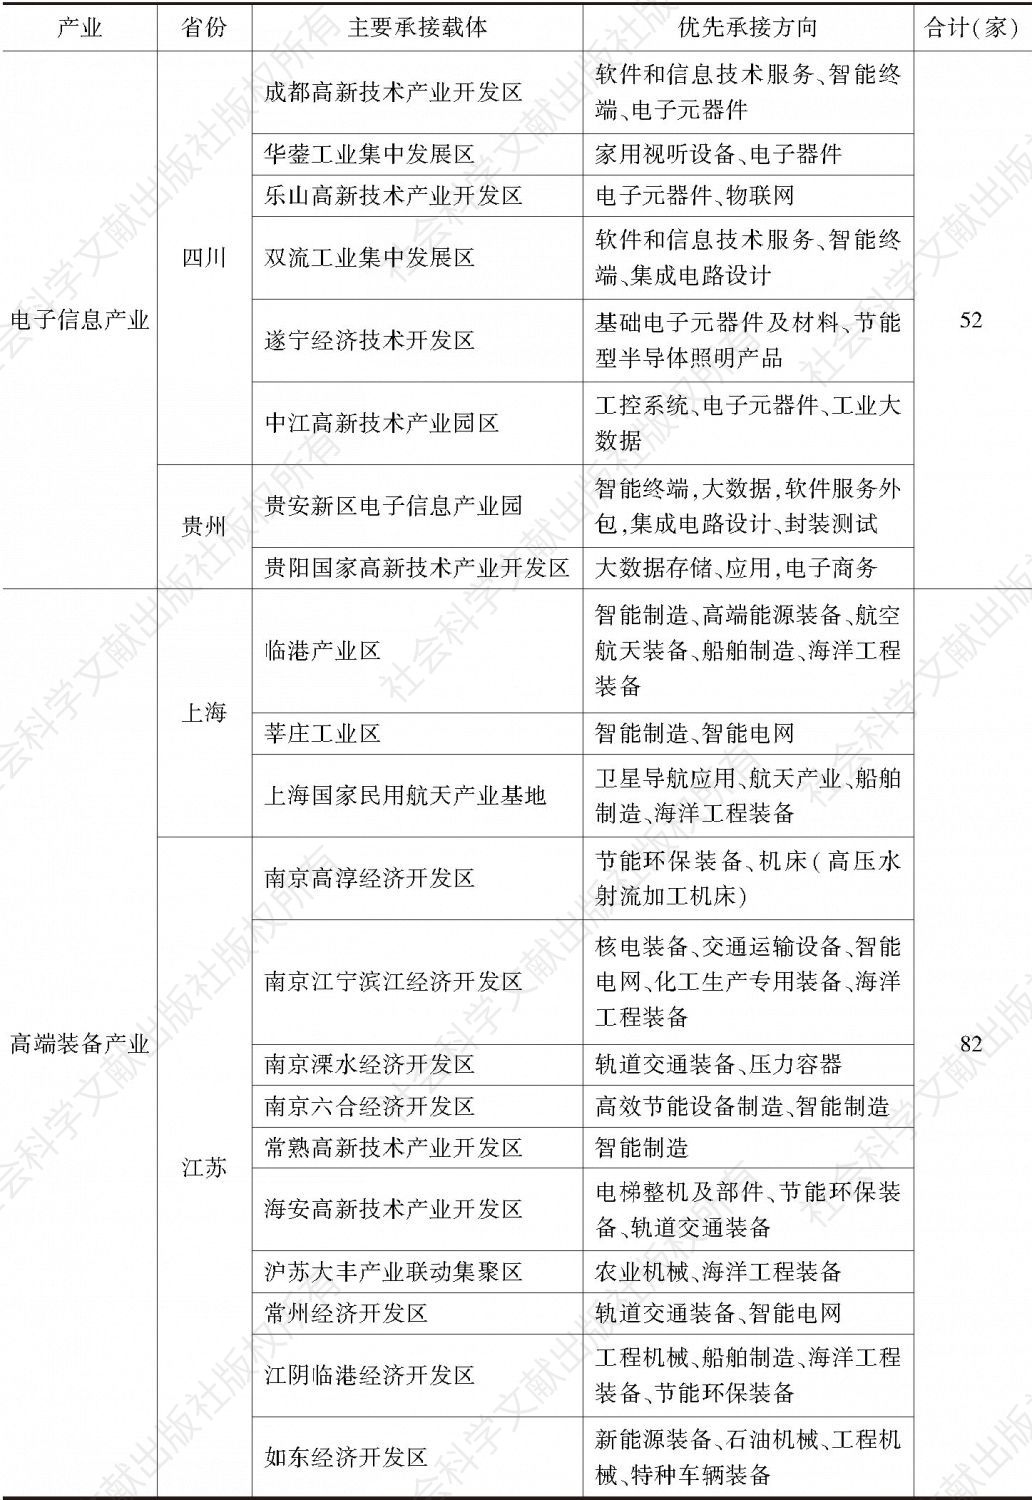 表1 长江经济带产业转移承接指南-续表2